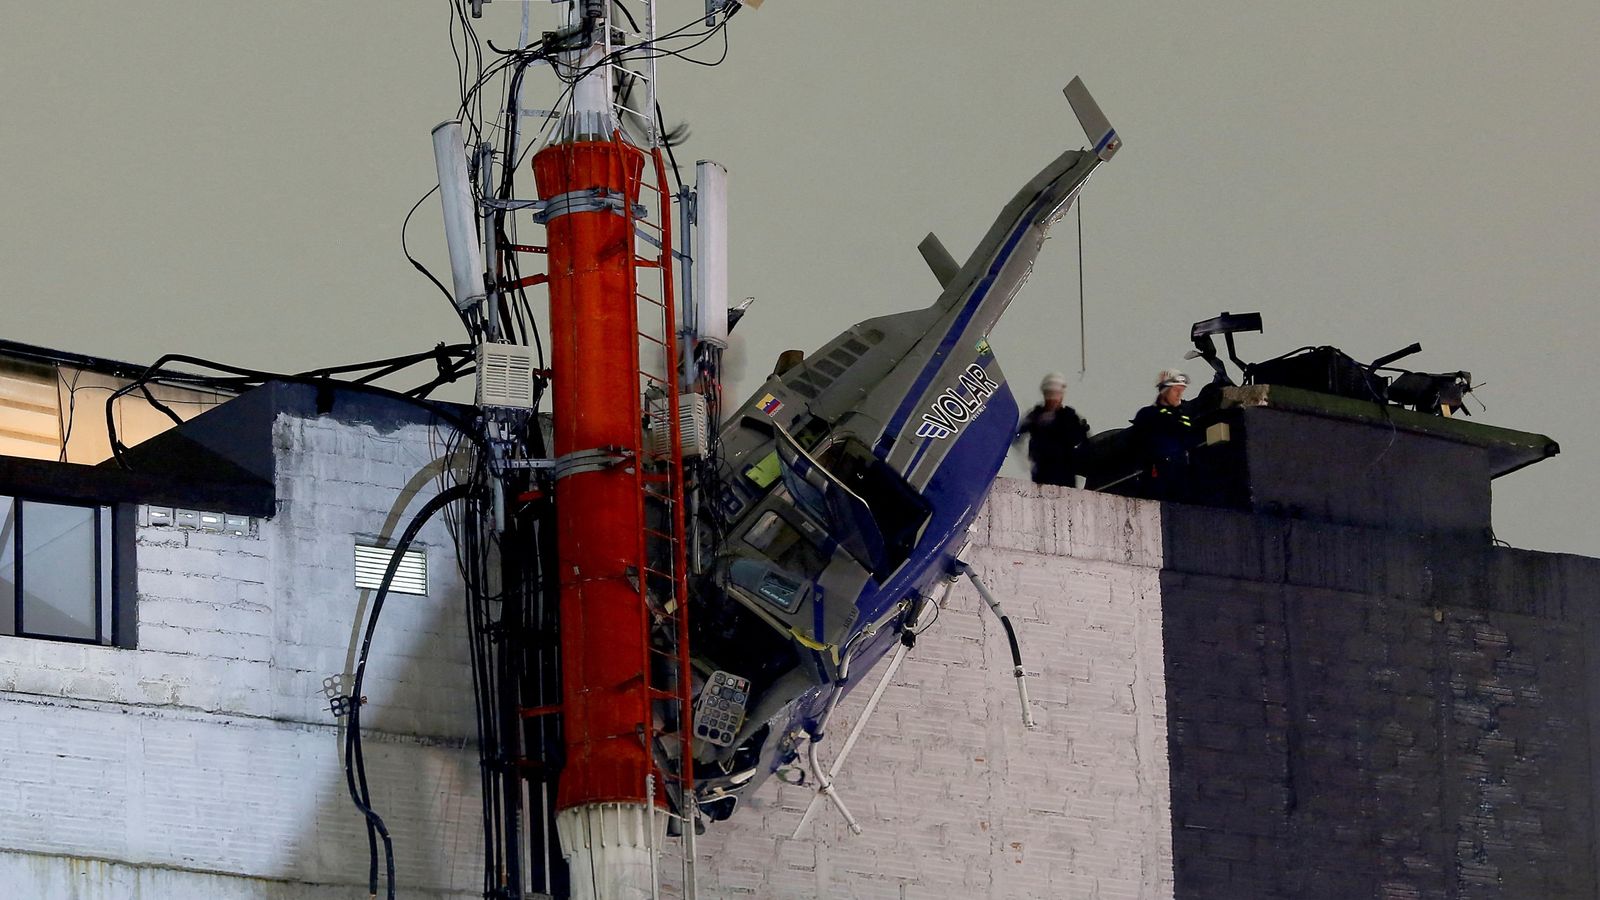 Колумбия: Пътниците оцеляват като по чудо, когато хеликоптер се разбива в сграда след излитане